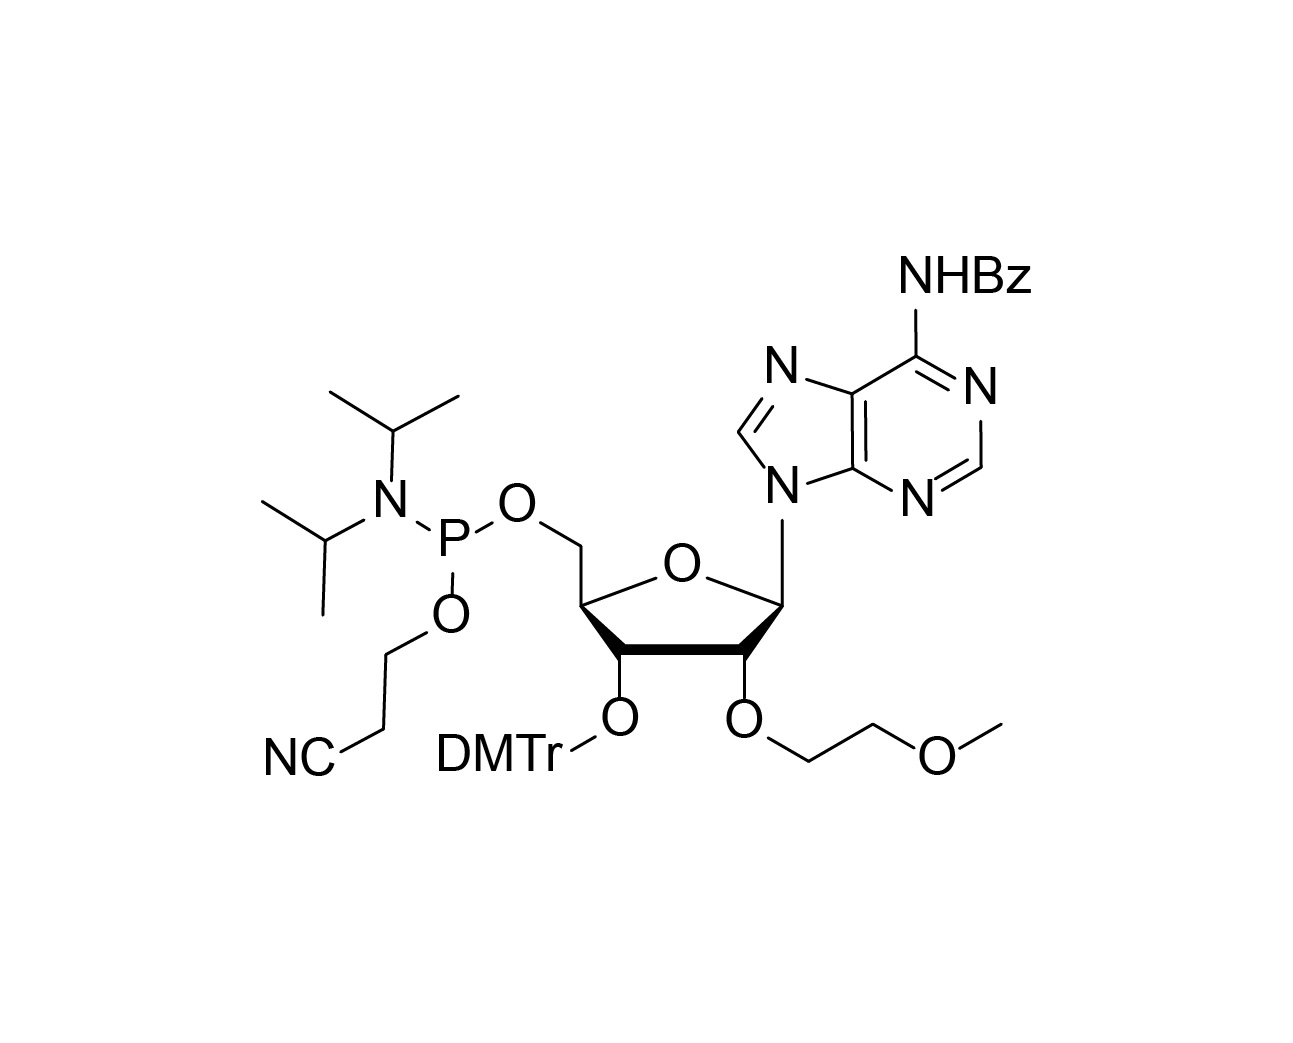 3'-O-DMTr-2'-O-MOE-rA(Bz)-5'-CE-Phosphoramidite